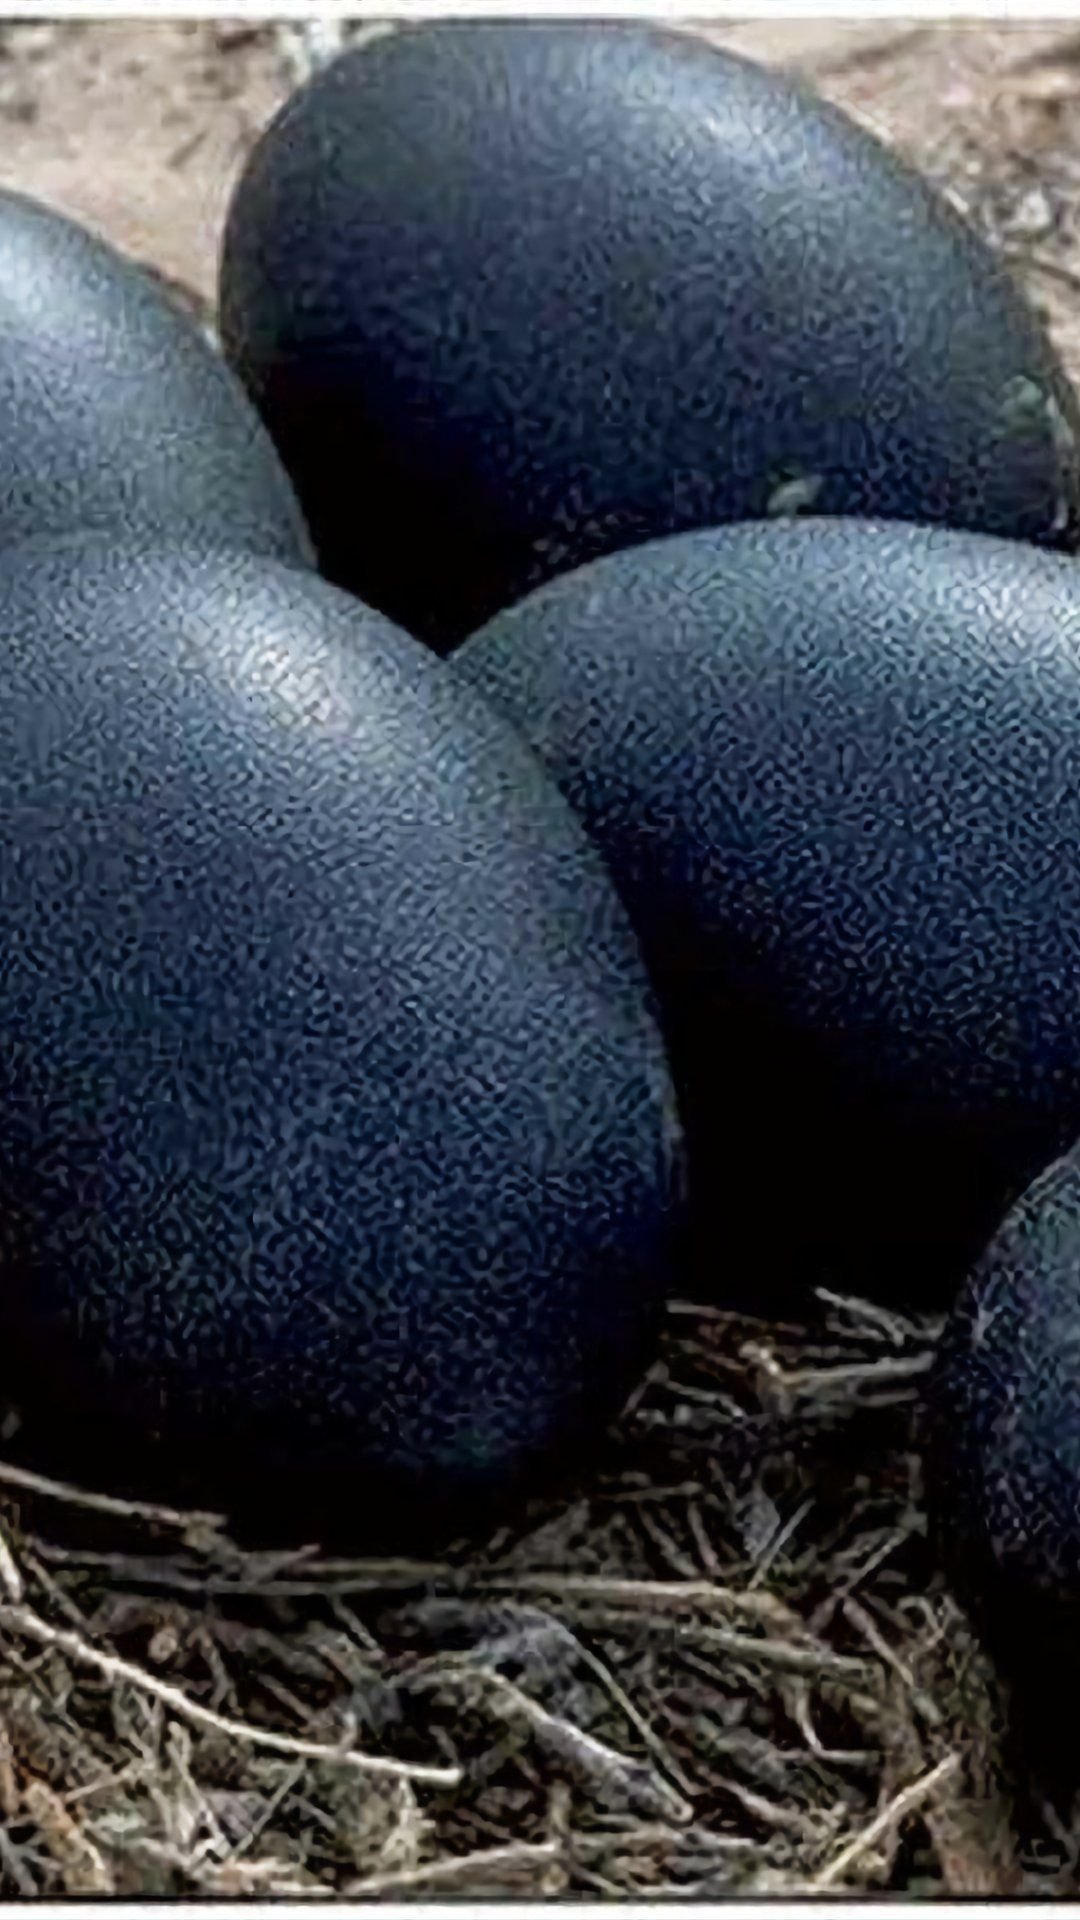 Куры несущие красные яйца фото и описание